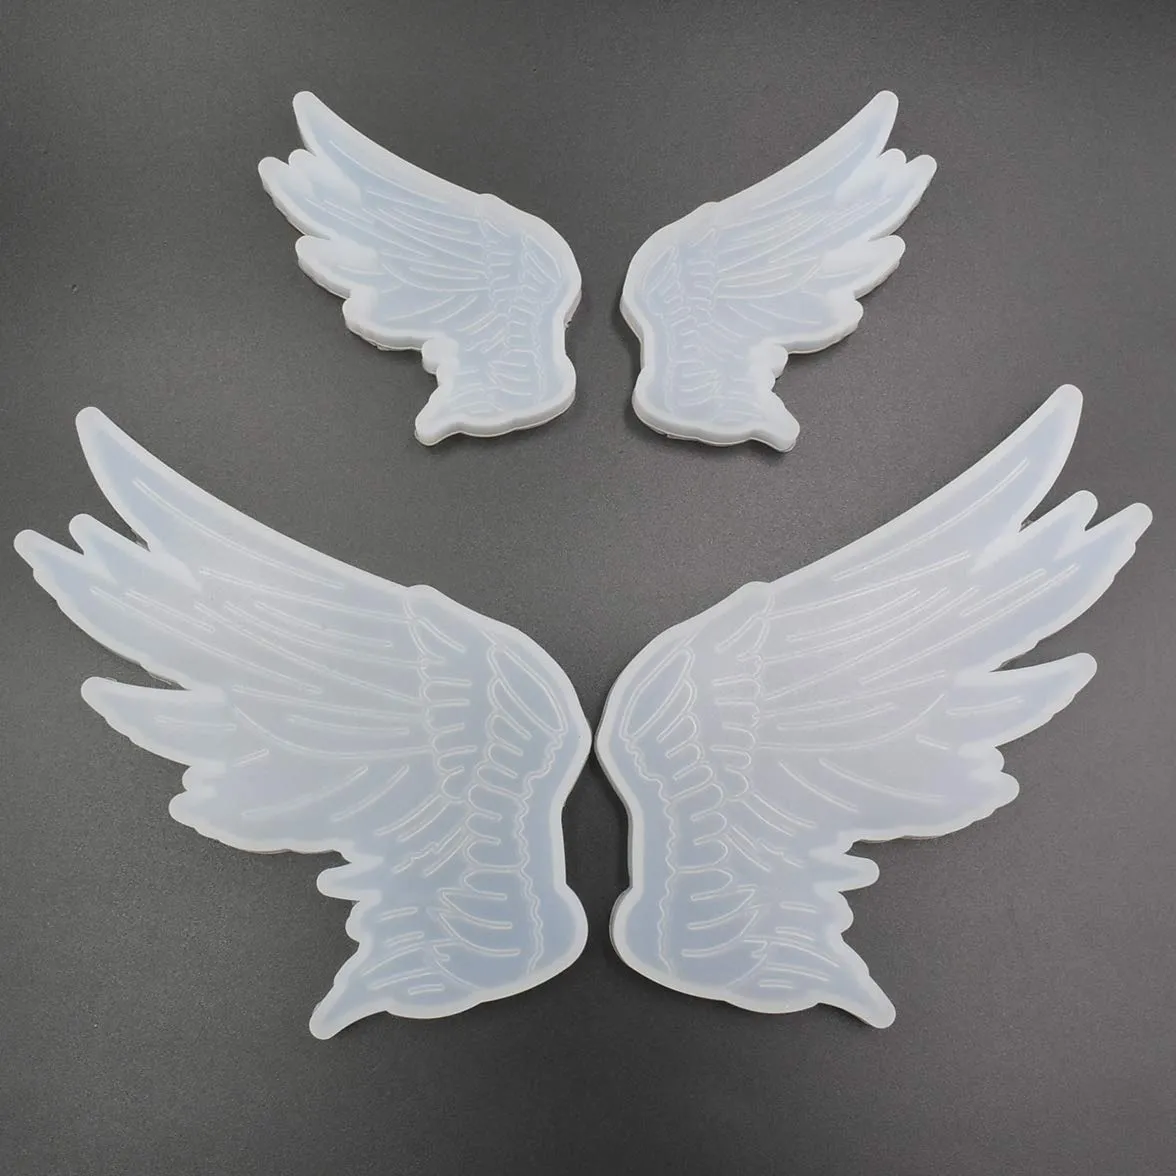 2 pares de alas de ángel y alas malvadas, Angel Wings Mold : Amazon.com.mx:  Hogar y Cocina